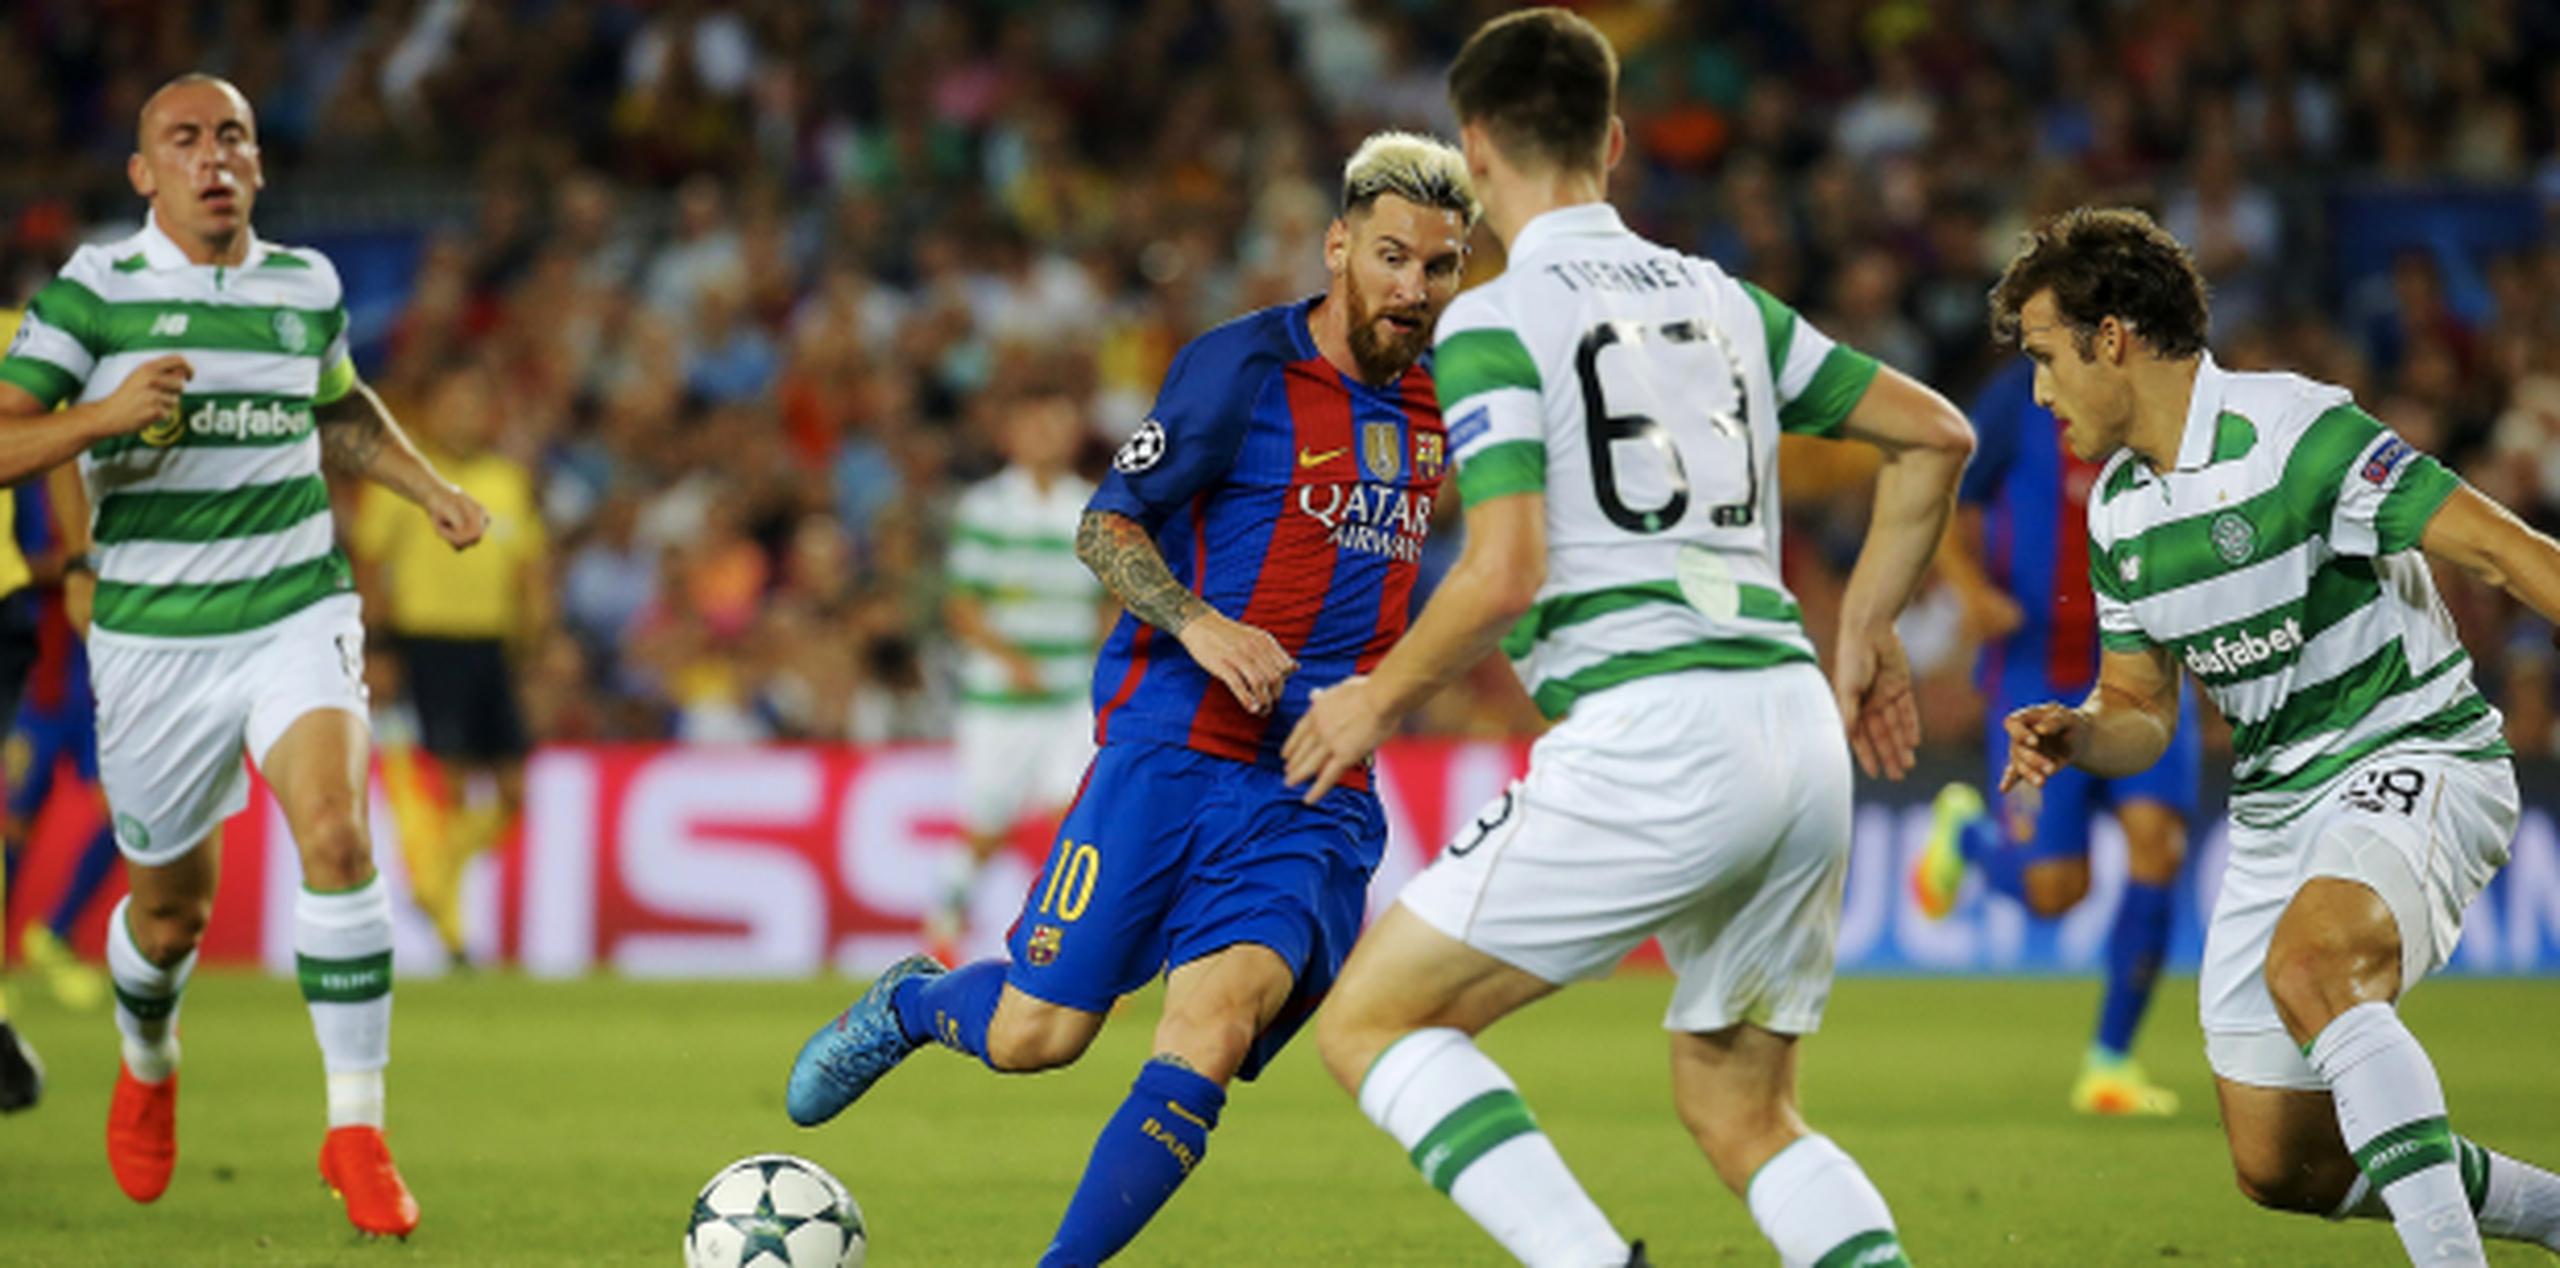 Lionel Messi maneja el balón durante el partido. (Agencia EFE)